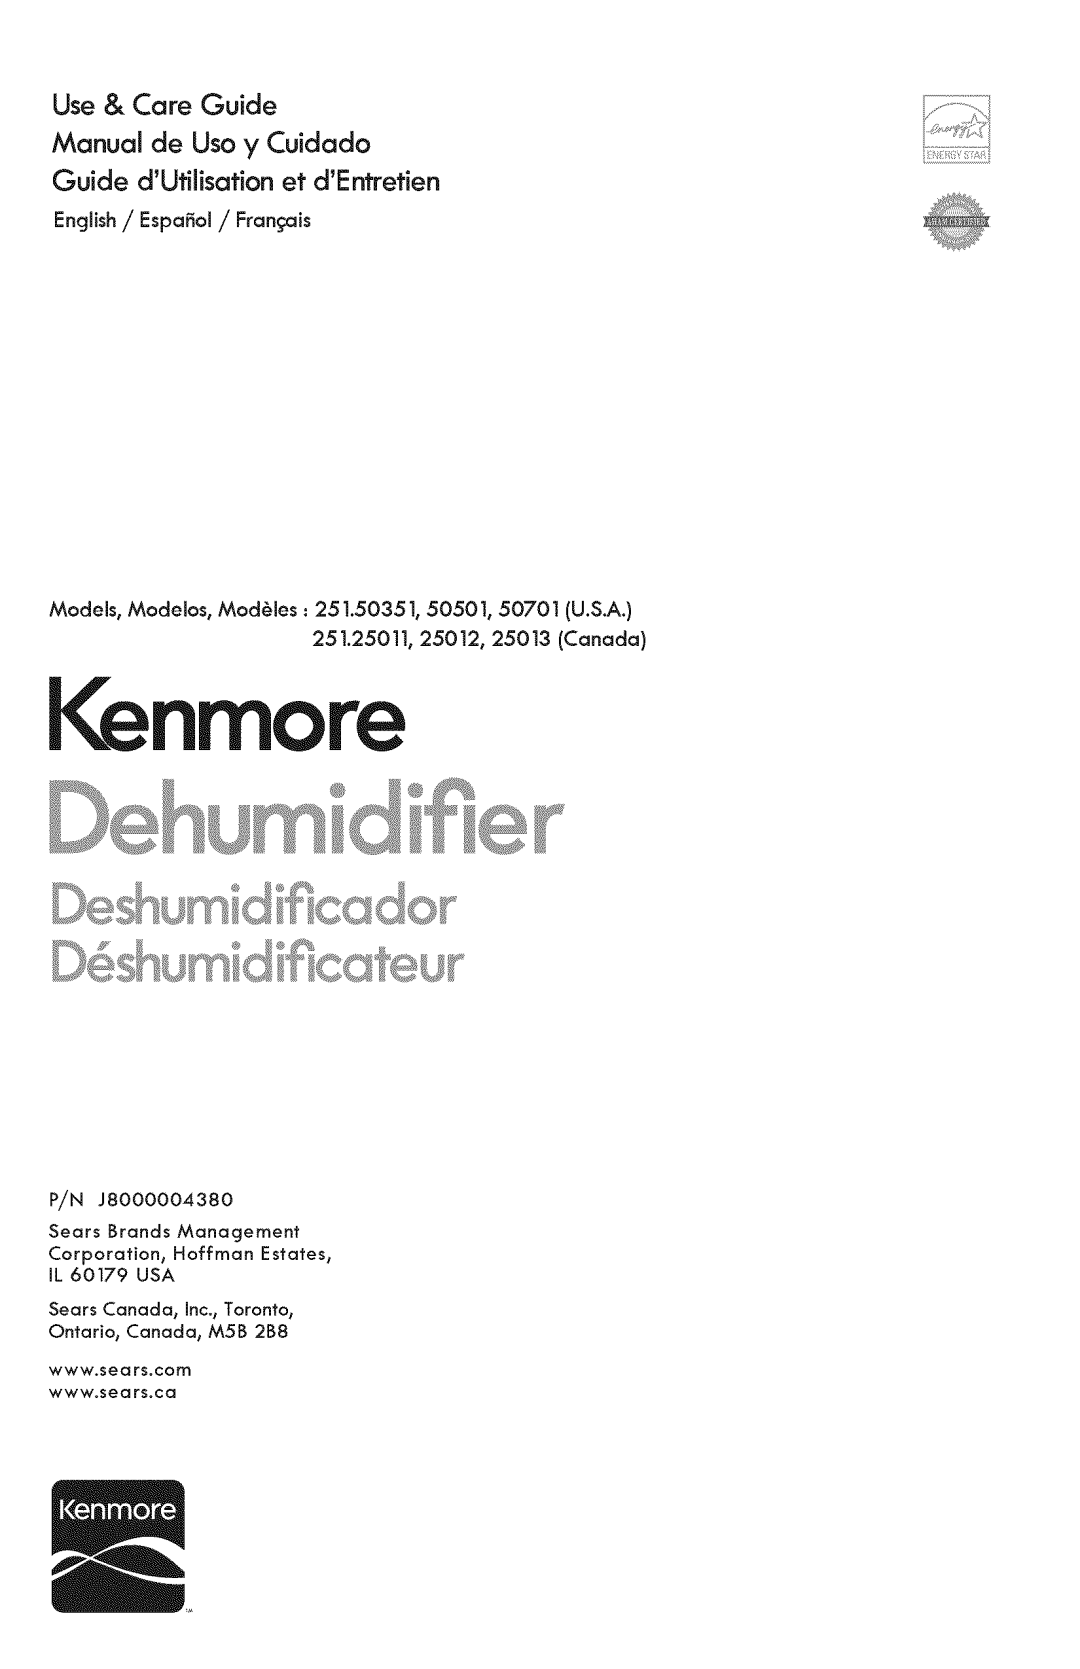 Kenmore 251.50501, 251.50701, 251.50351 manual Use& CareGuide Manualde Usoy Cuidado, GuidedUtilisationet dE retien, I nmo 